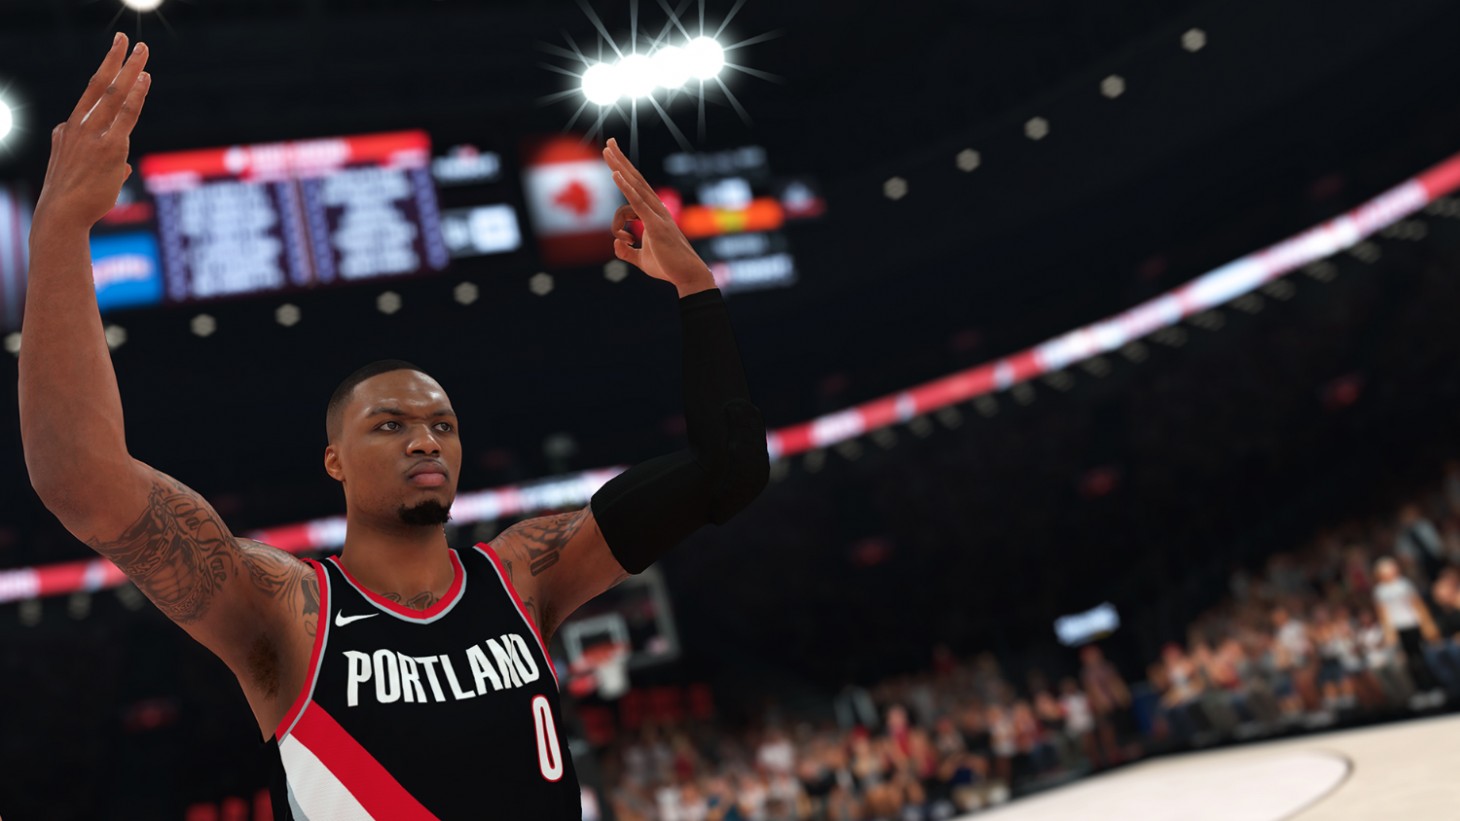 《NBA 2K19》成為系列銷量冠軍 遊戲支出上漲140%